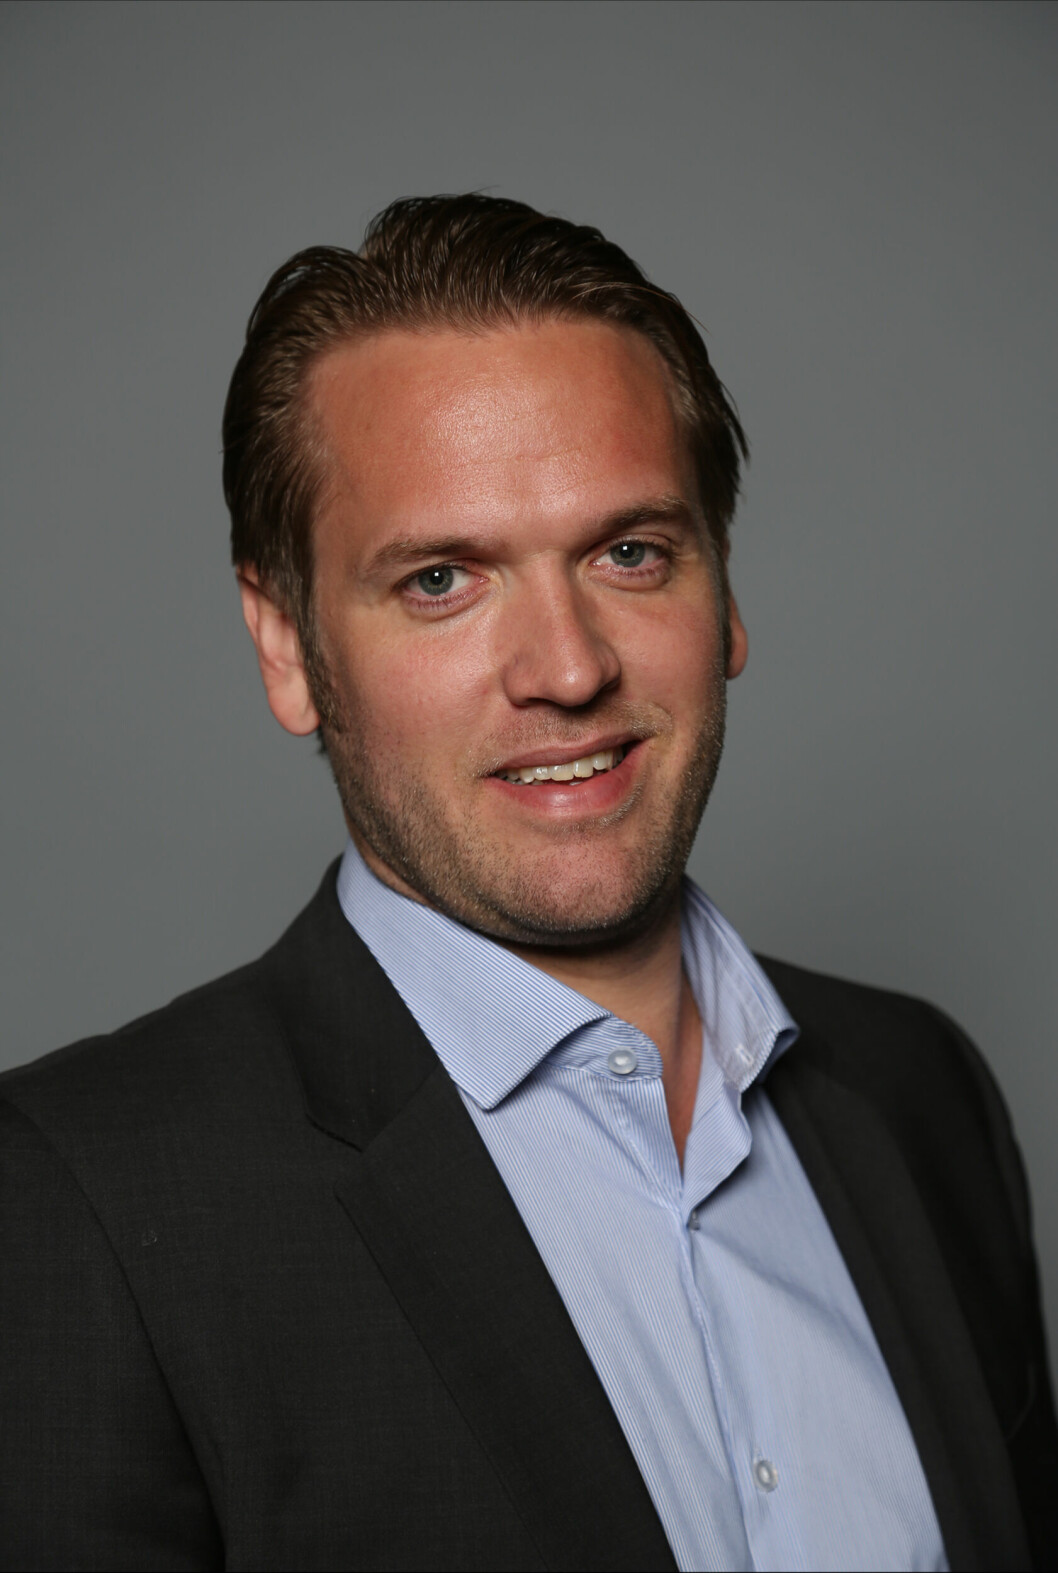 ERFARING: Eivind Lunde har allerede jobbet over tre år i Cisco. Nå rykker han oppover og blir ny salgsdirektør for storkunder i selskapet. (Foto: Steve-Reed)